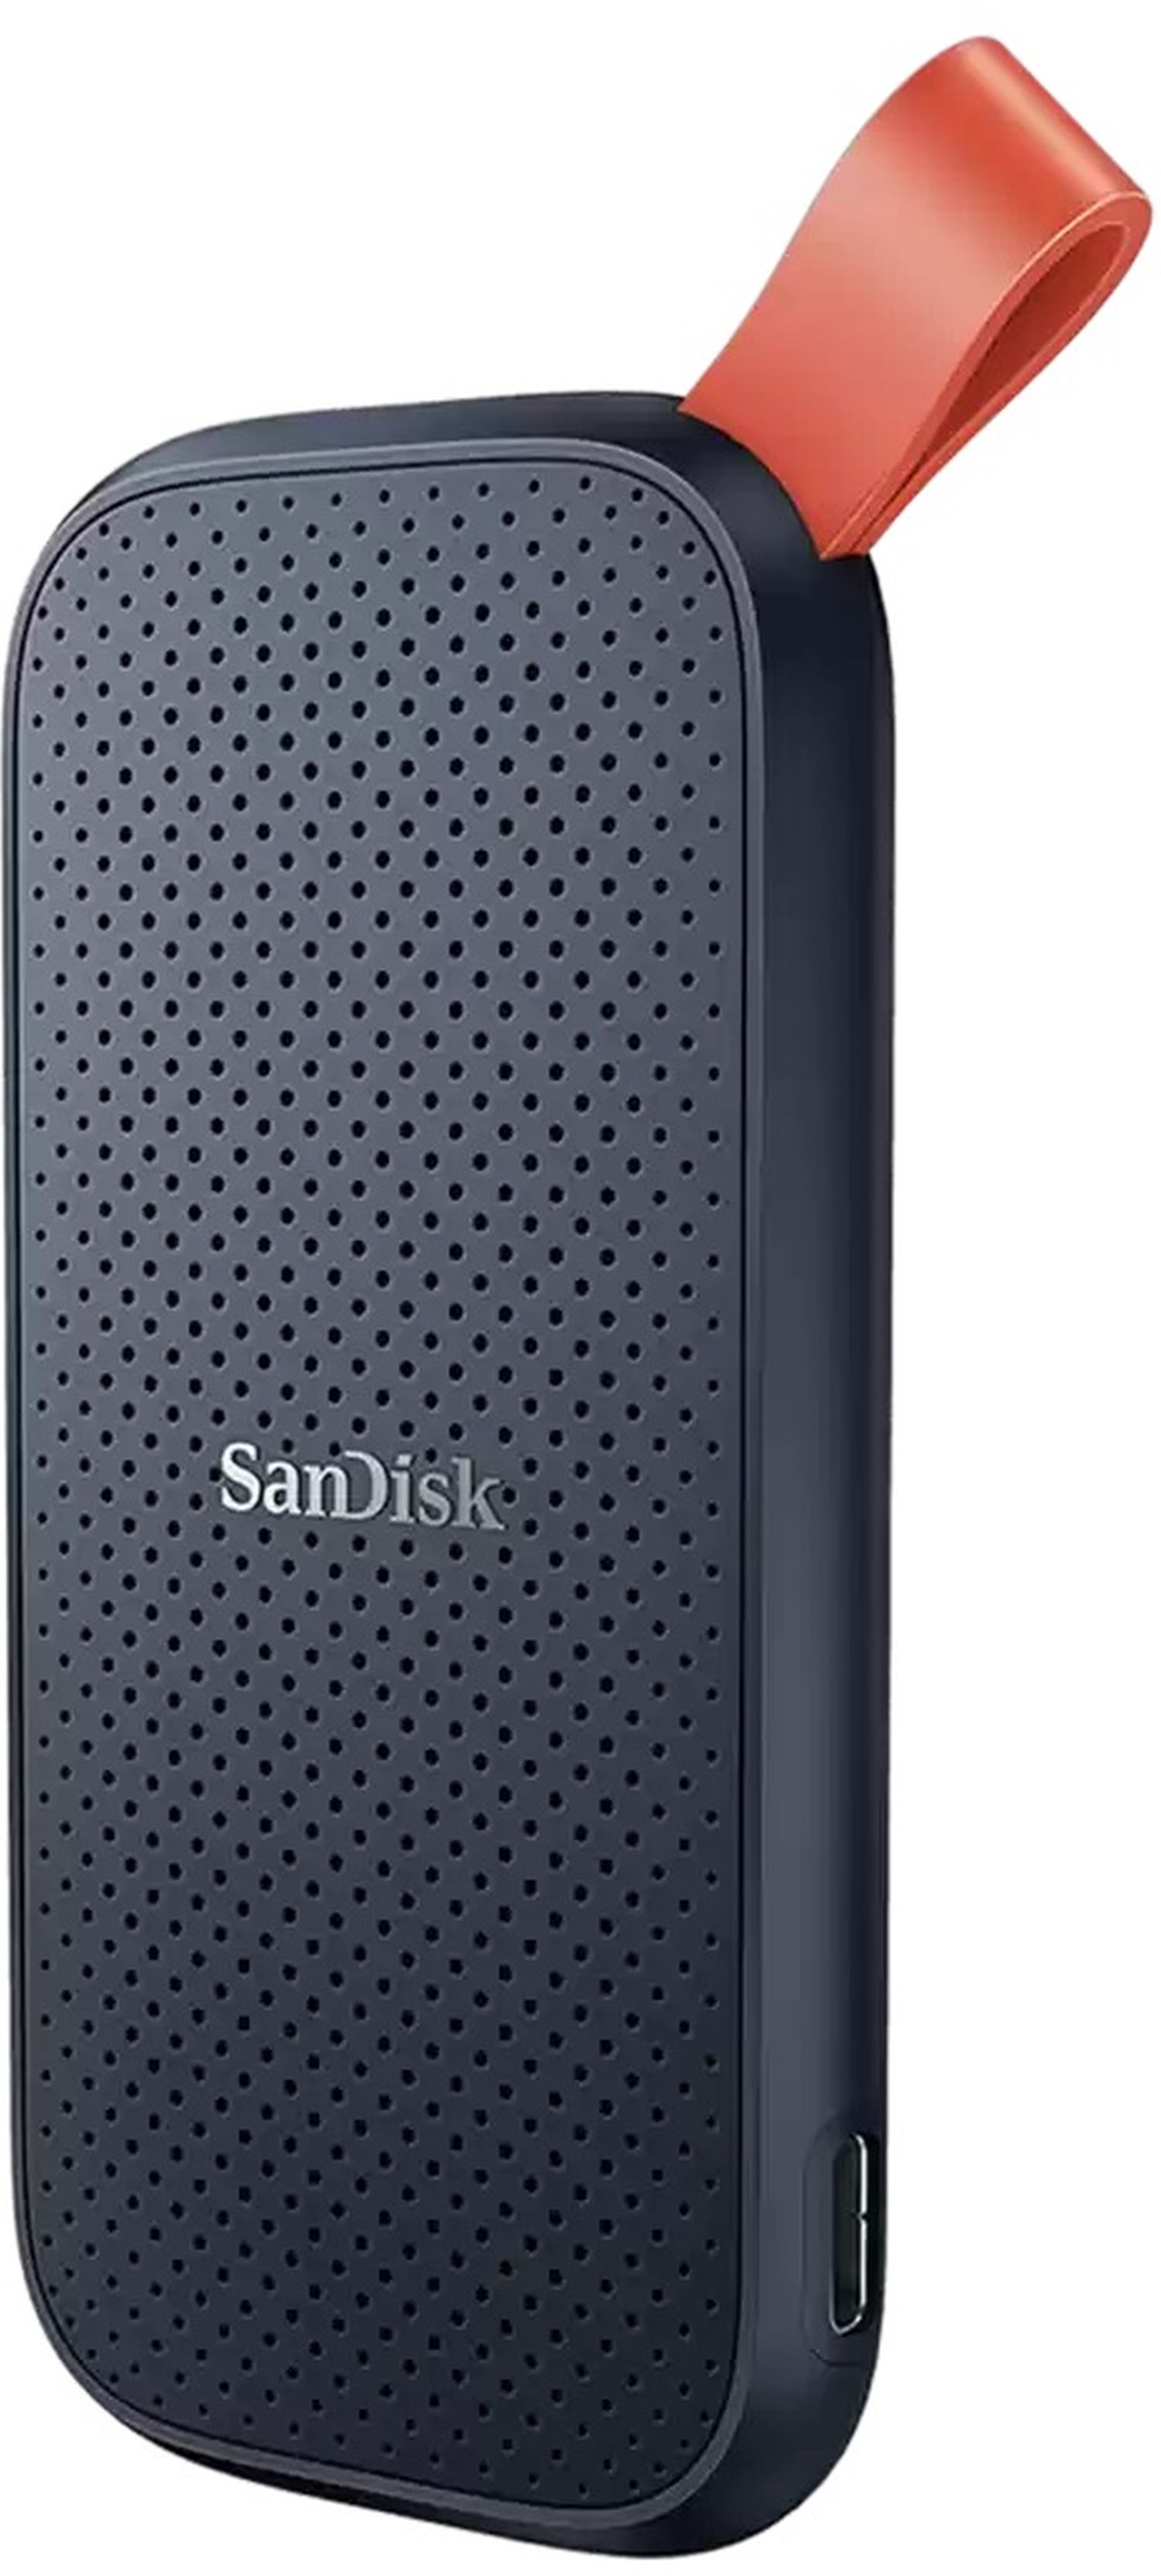 SanDisk Portable SSD 1TB 800MB/s - Foto Erhardt